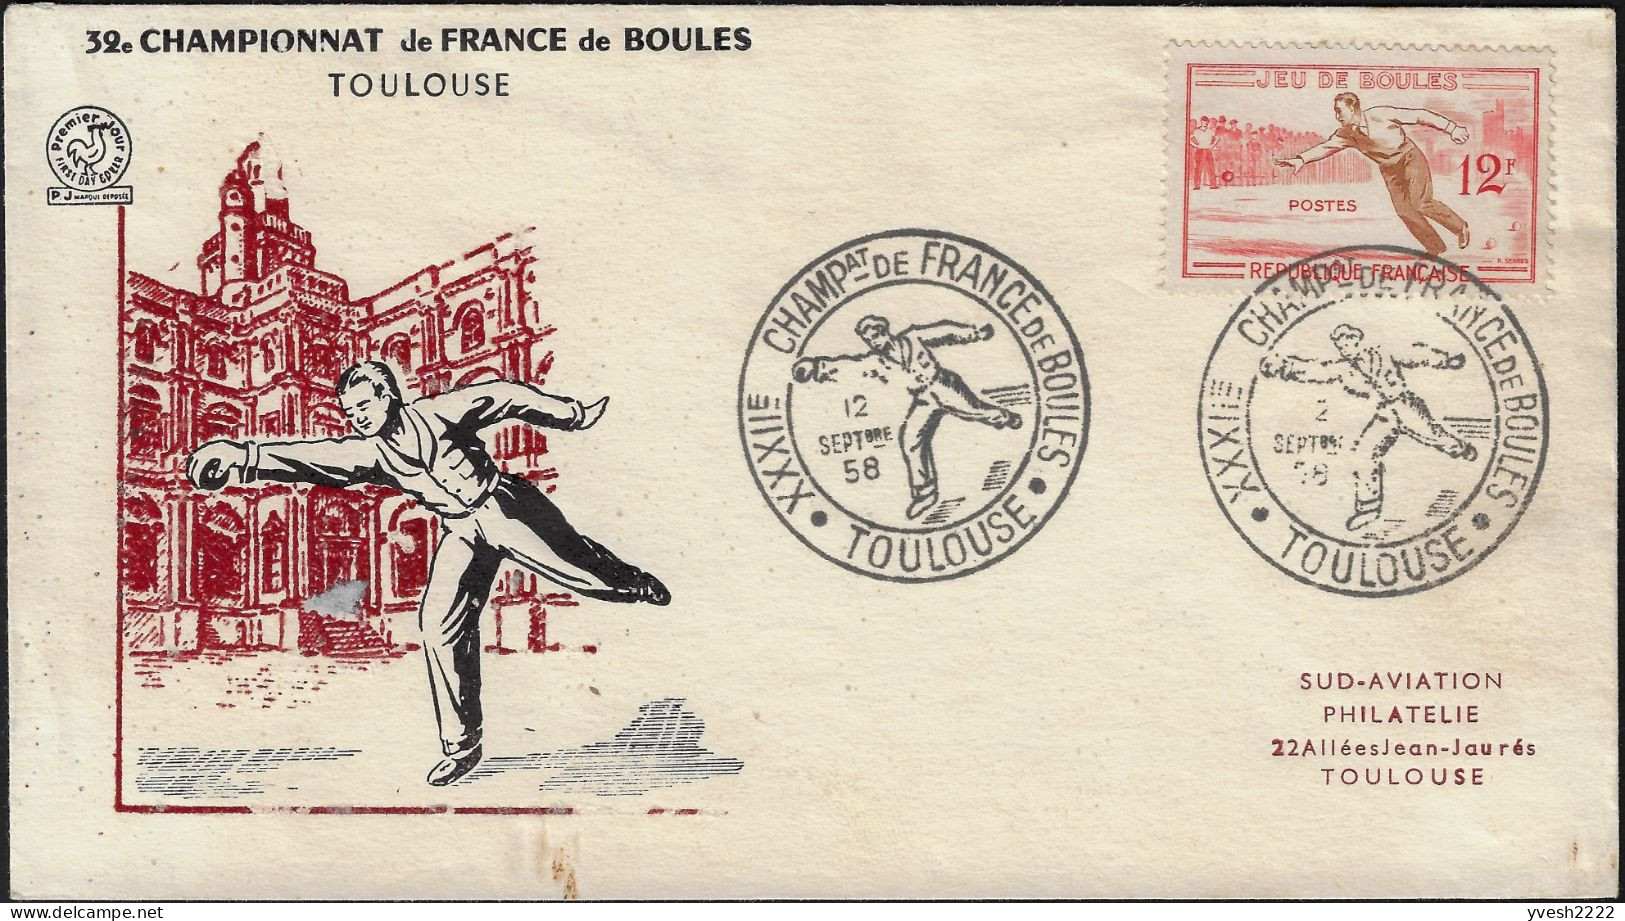 France 1958 Y&T 1161. Enveloppe, Jeu De Boules. Championnat De France, Toulouse - Boule/Pétanque